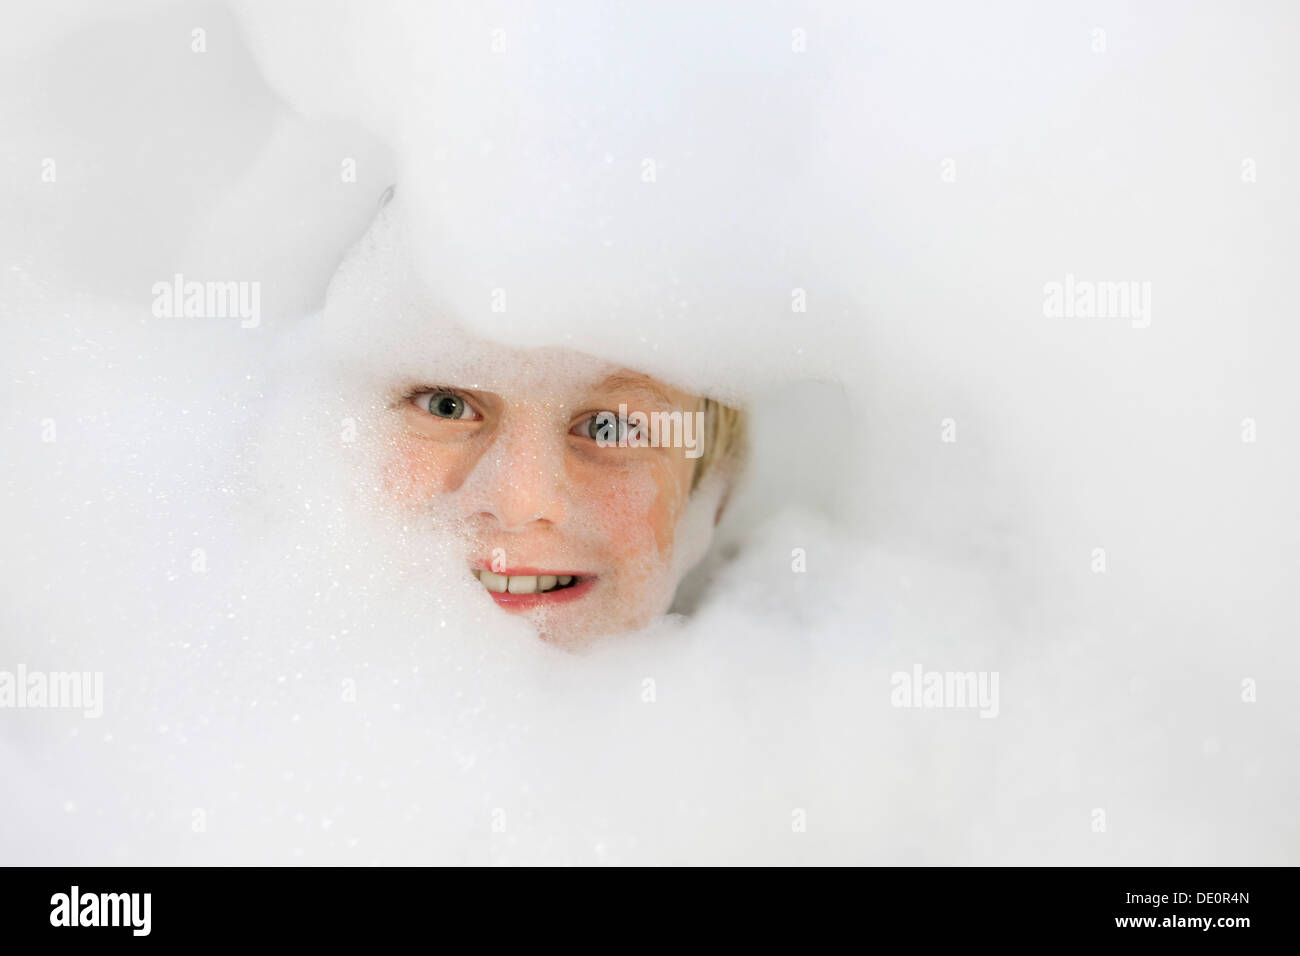 Boy, 9 years, head amidst bath foam Stock Photo